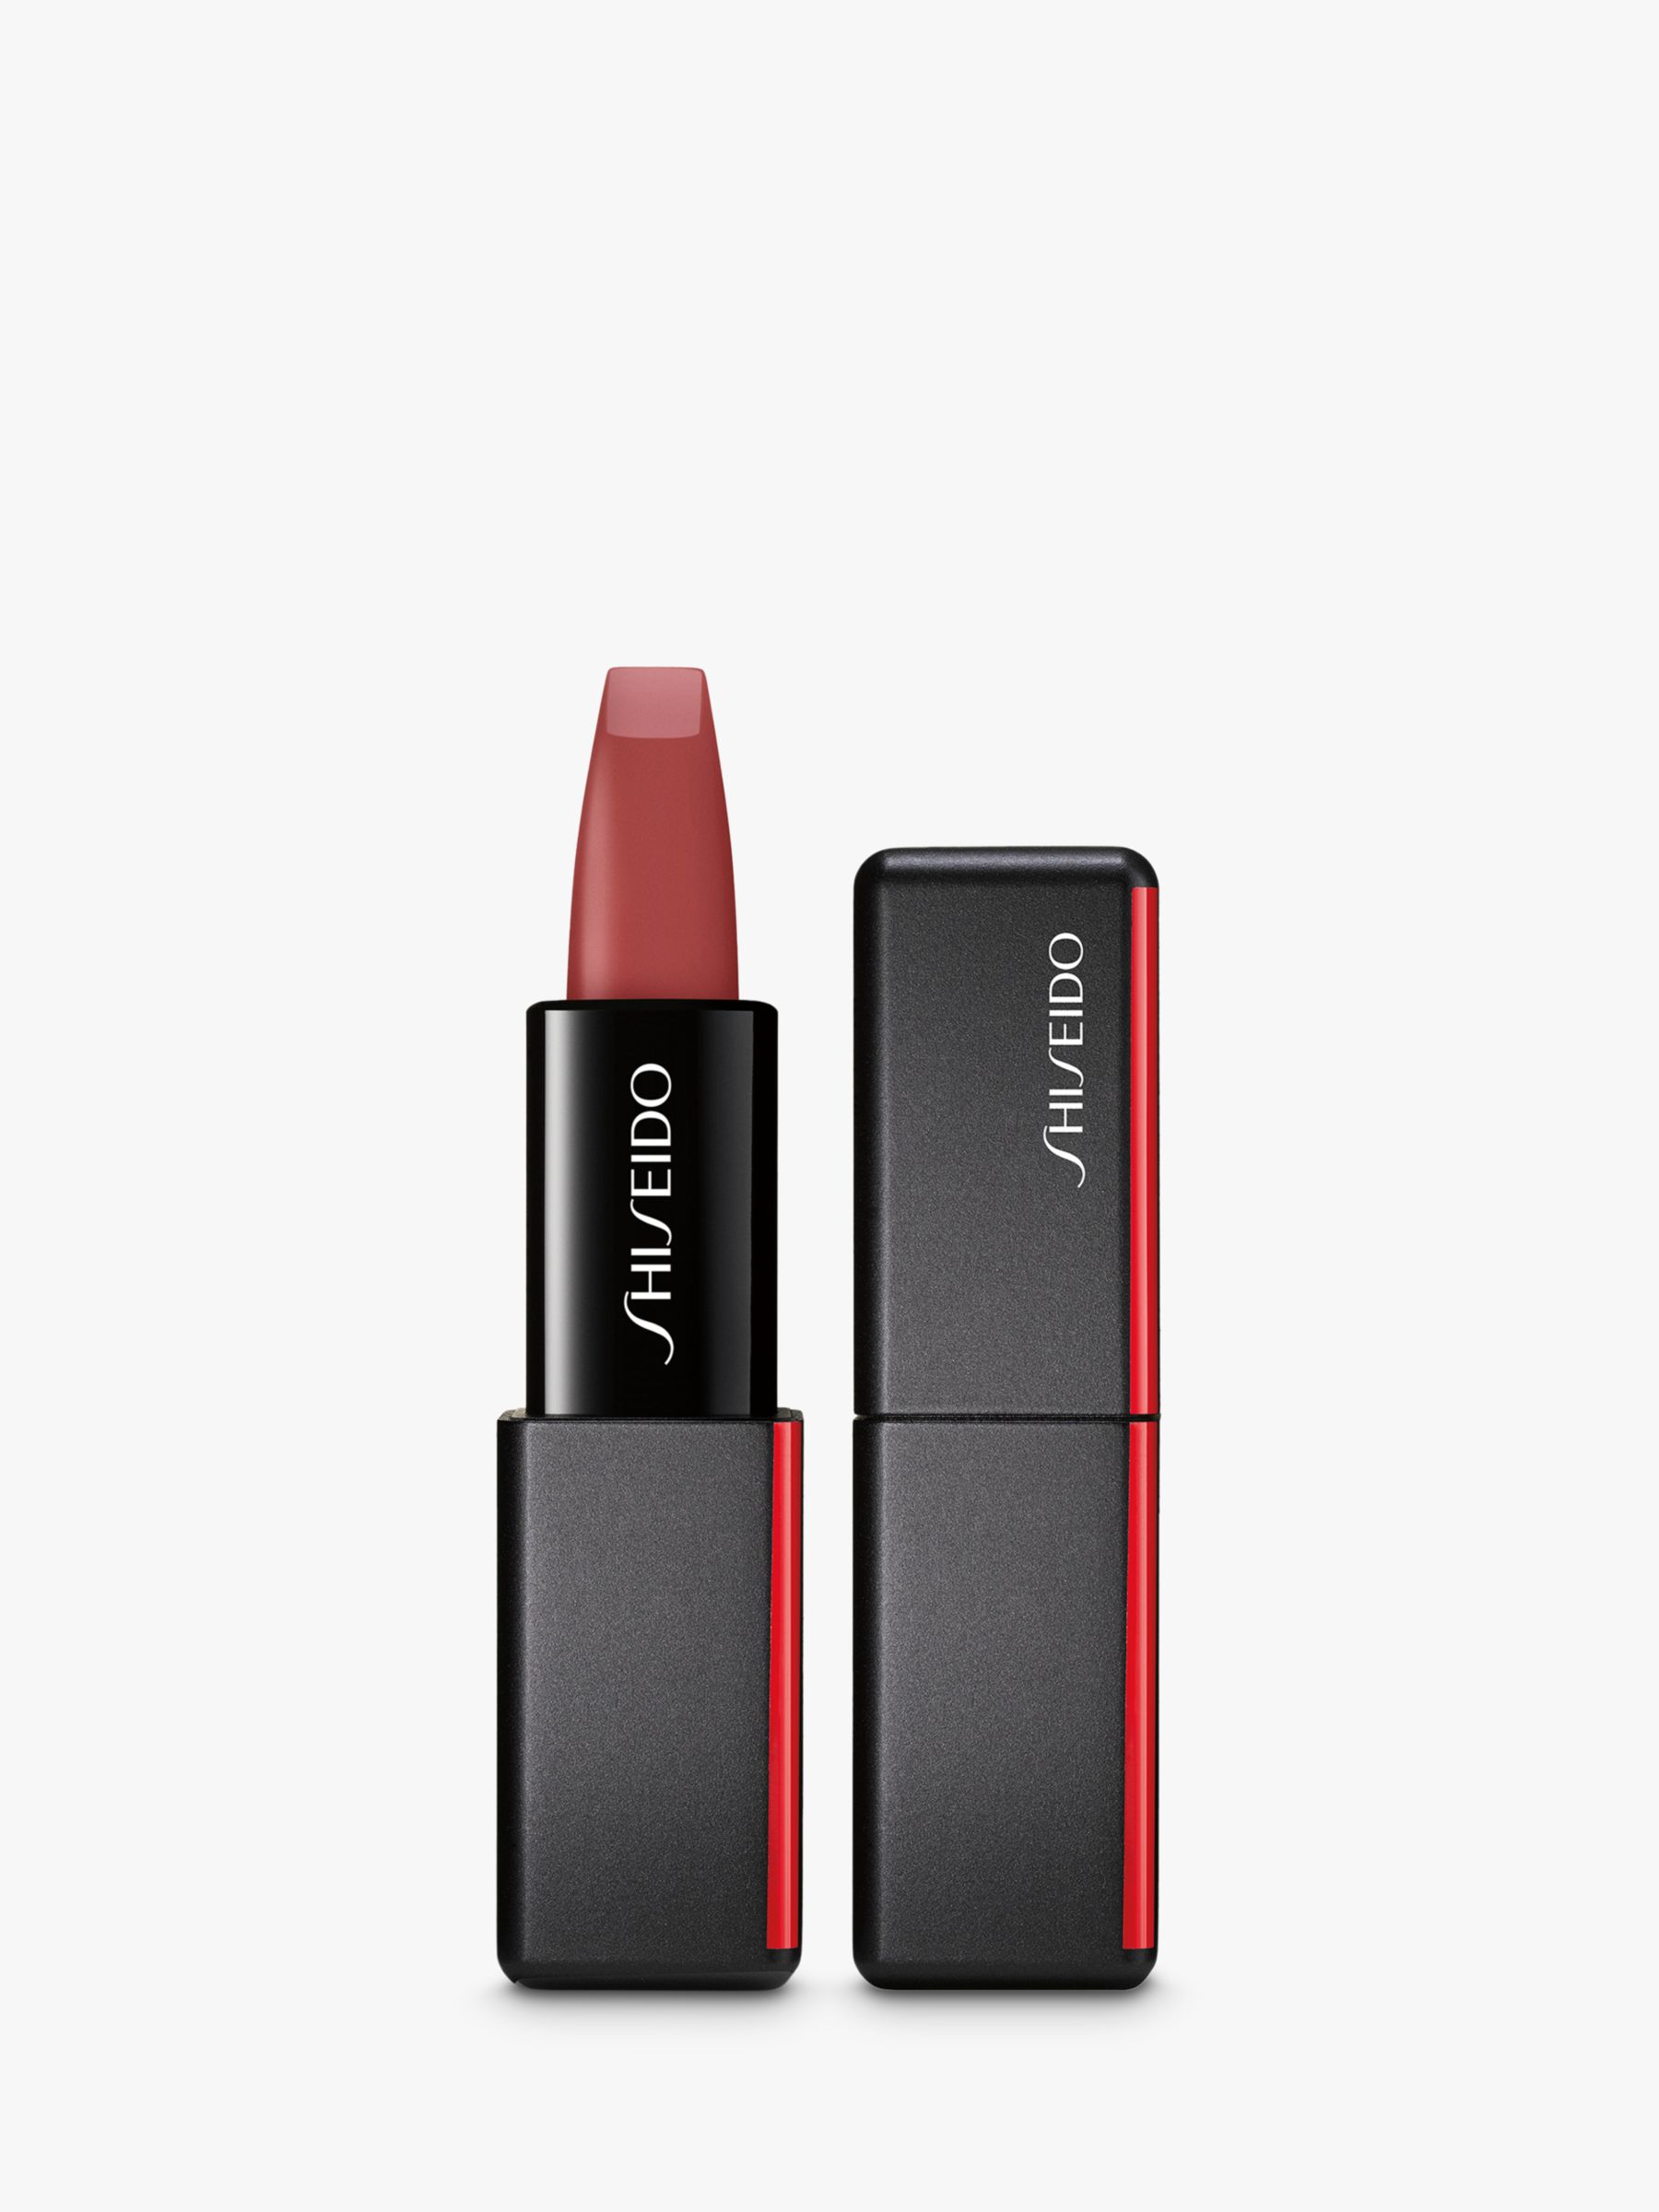 Shiseido Modern Matte Powder Lipstick, Semi Nude 508 1